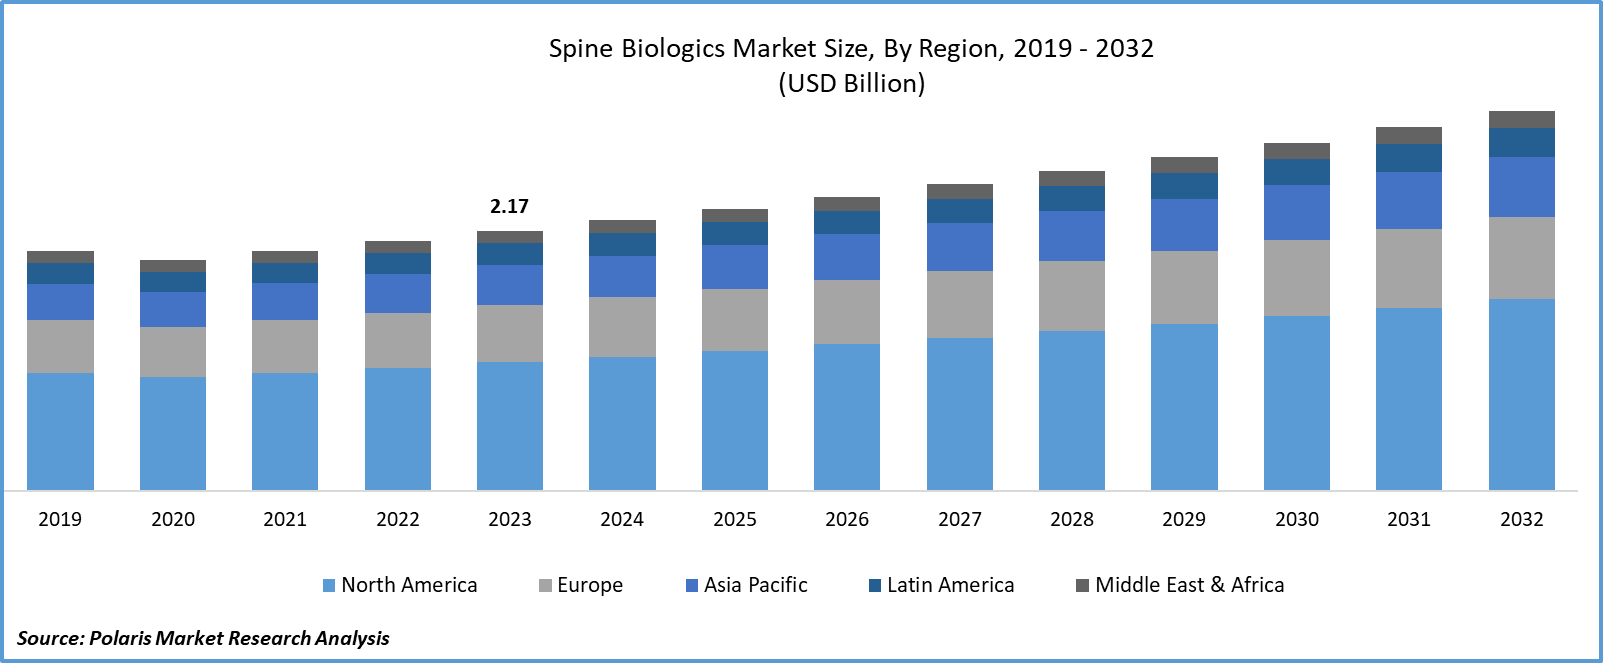 Spine Biologics Market Size